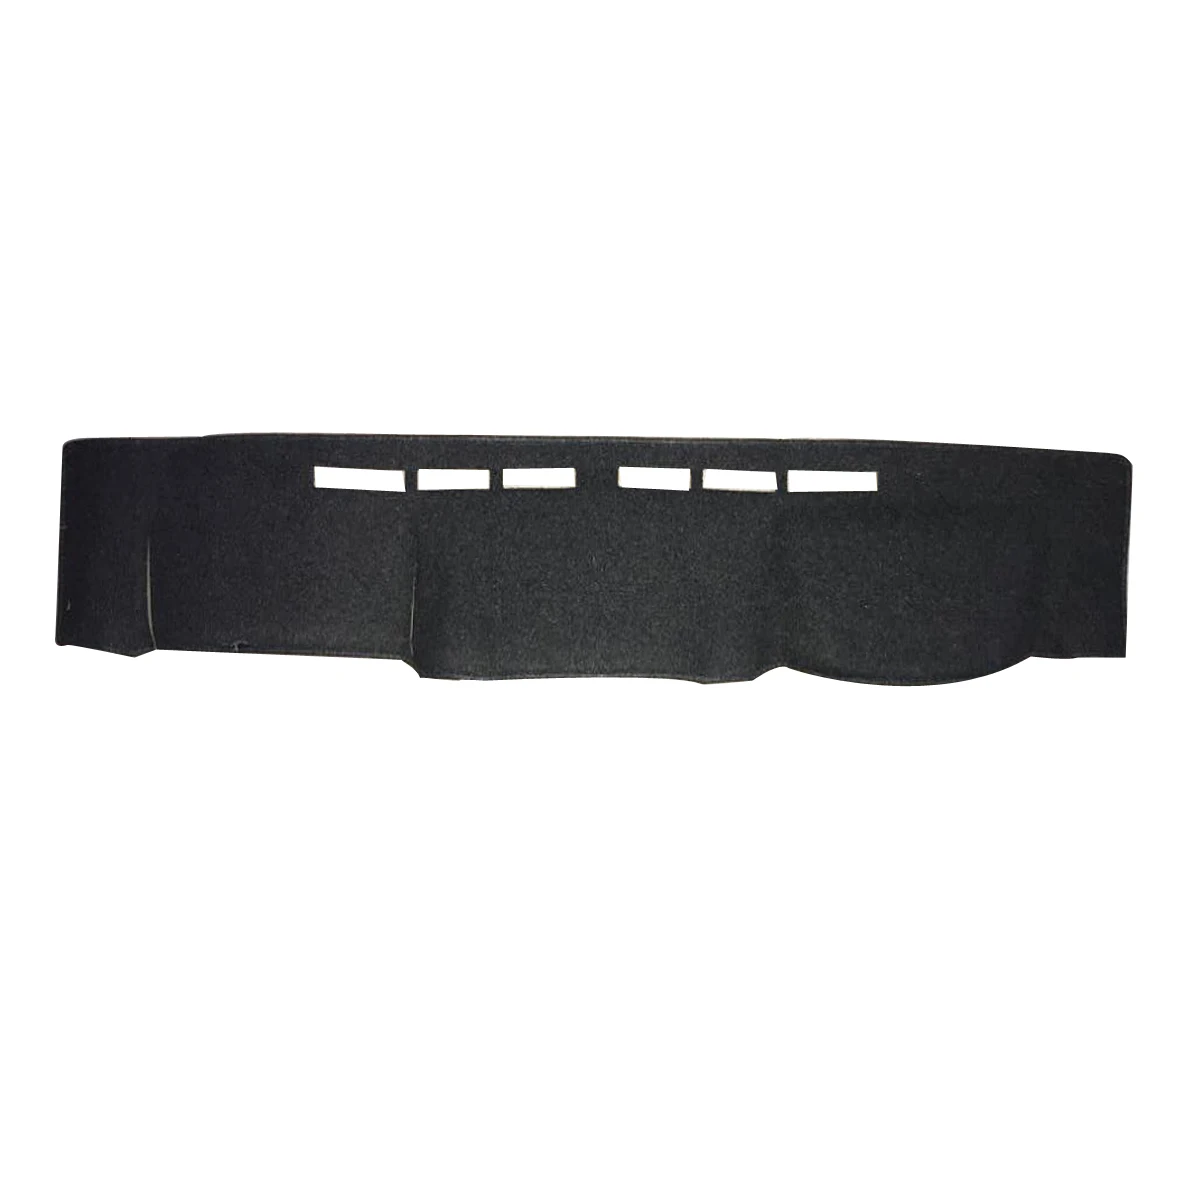 Audew черная Анти-пыль правая панель управления коврик анти-солнце покрытие доски для Toyota Landcruiser 70 76 78 79 серии 7/2009- DM1129